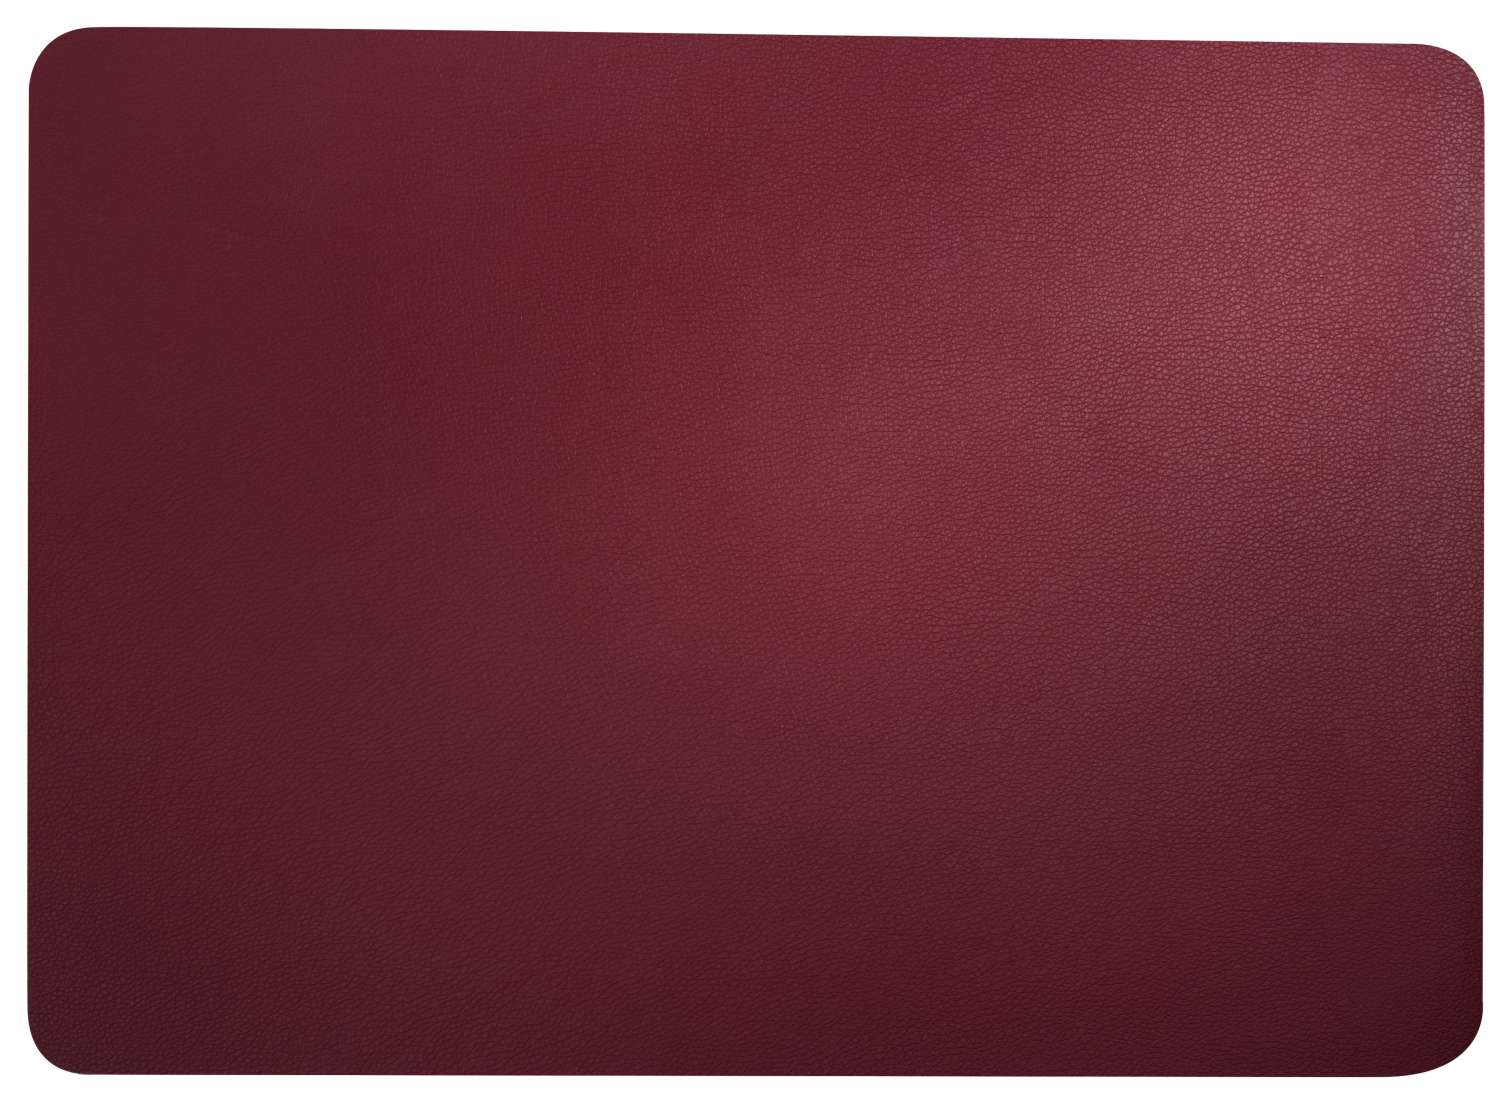  leather optic fine Tischset, magnolie  Breite: 33cm Länge: 46cm  rot PVC - Lederoptik 